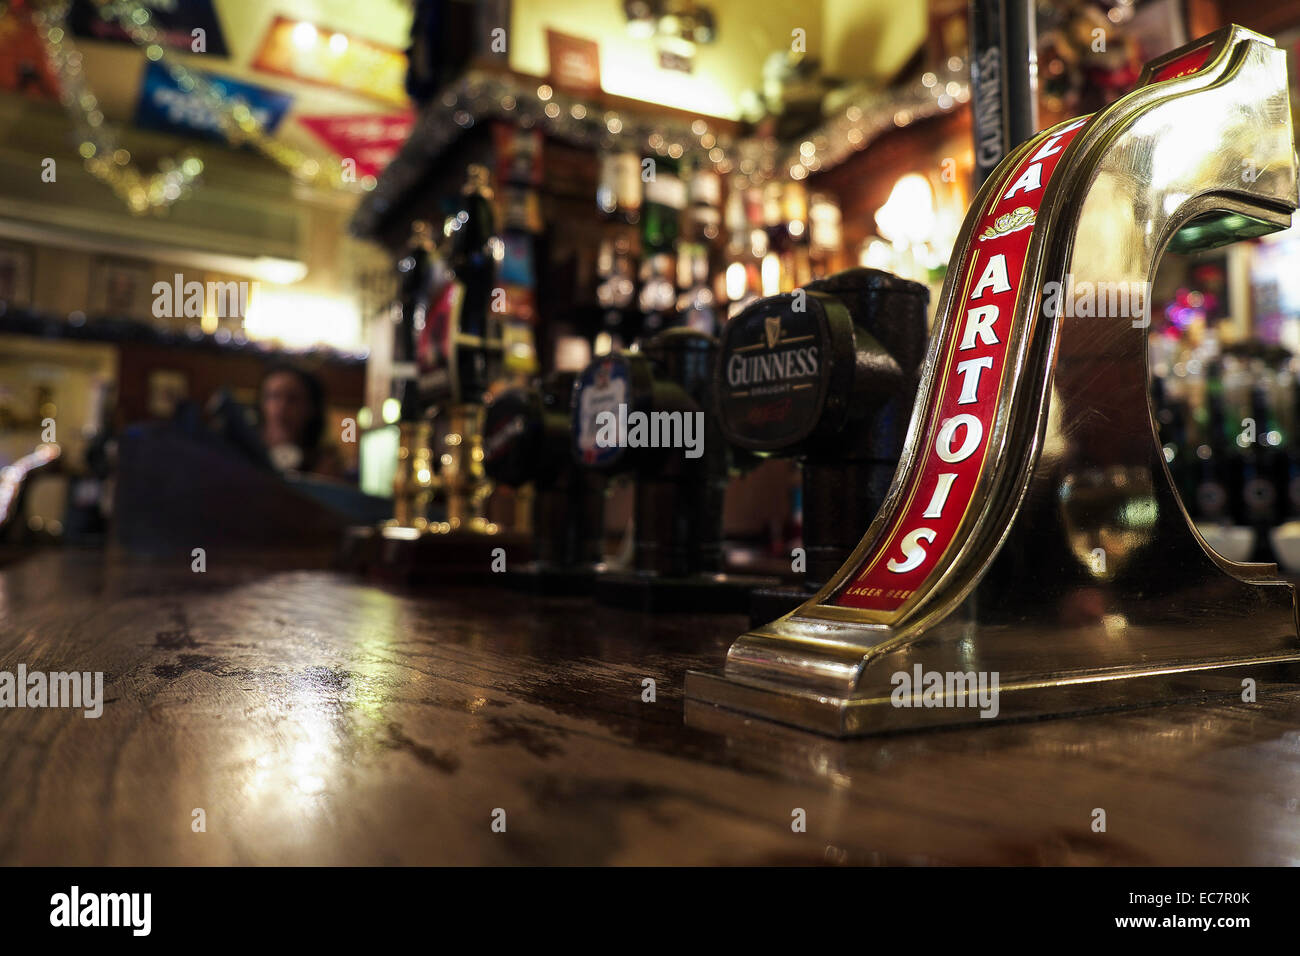 Le bar de l'Nell de vieux Drury pub à Covent Garden, Londres. Banque D'Images